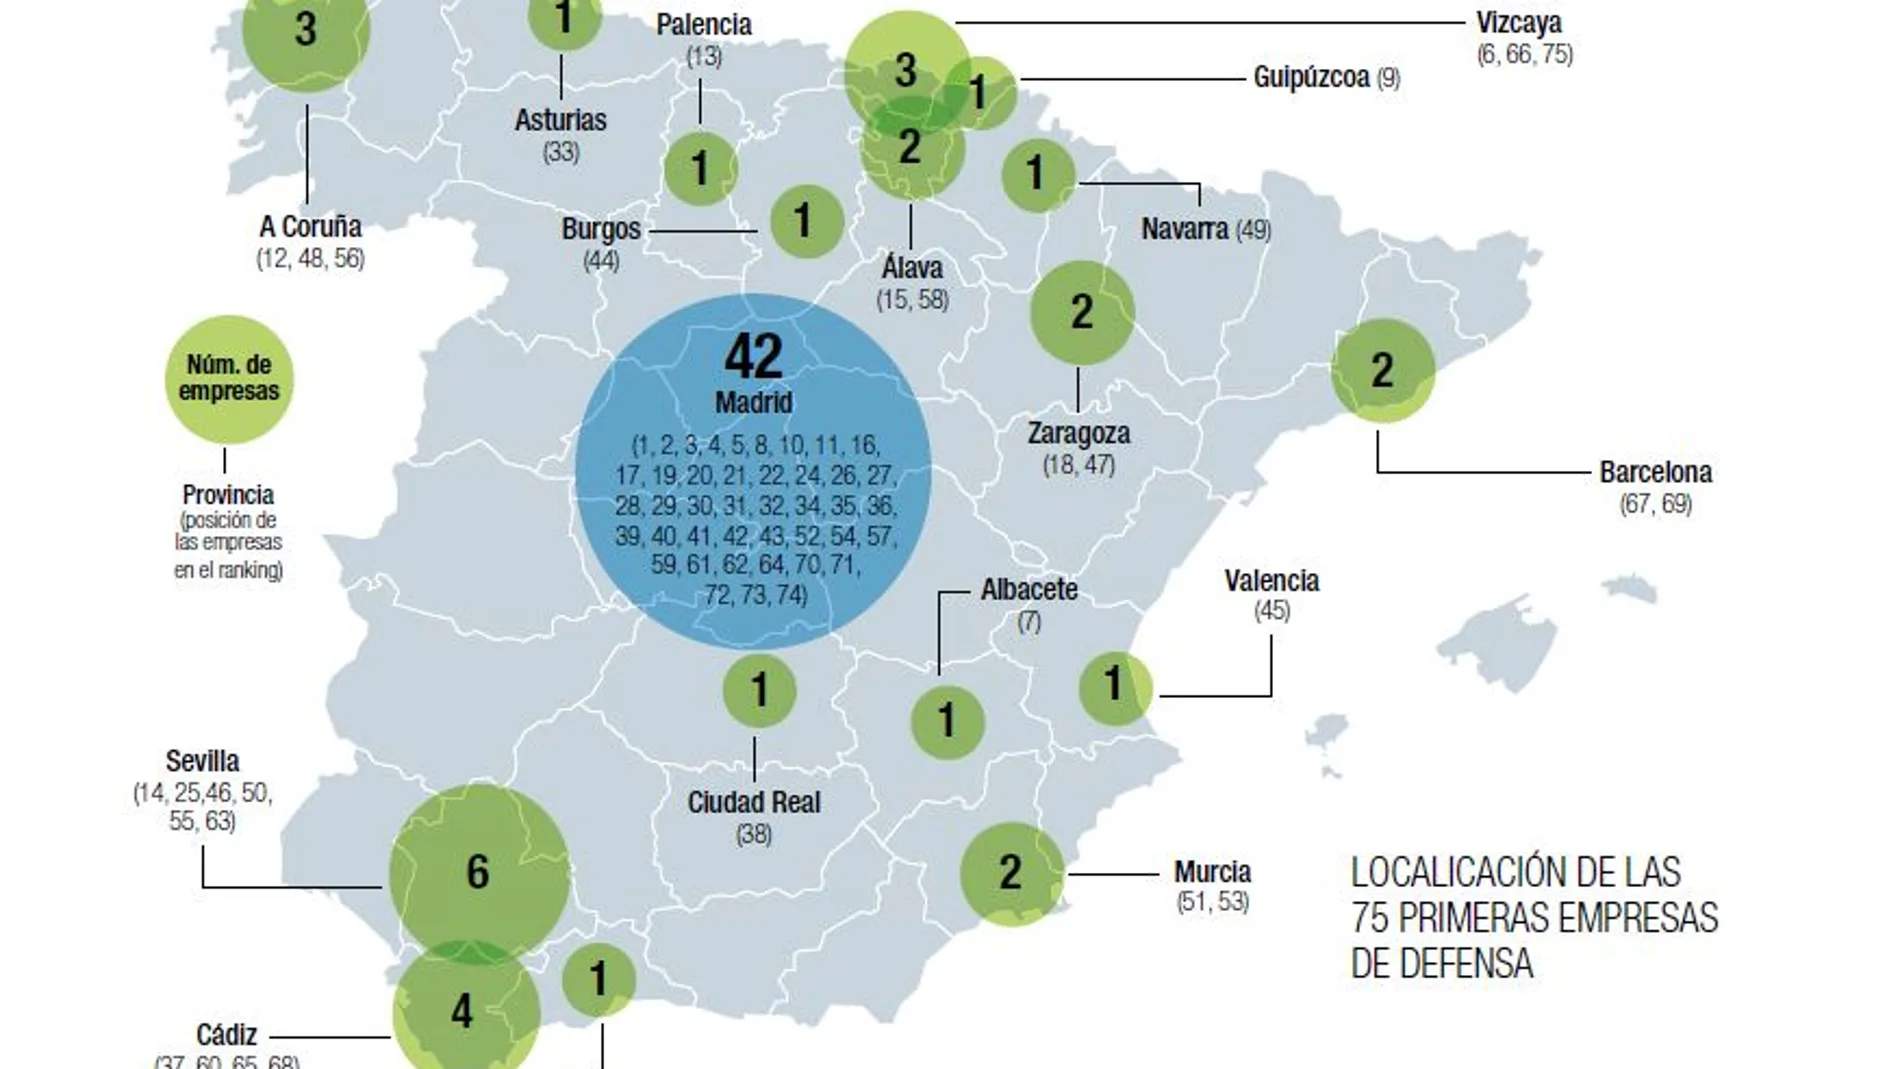 Localización de las 75 primeras empresas de defensa.